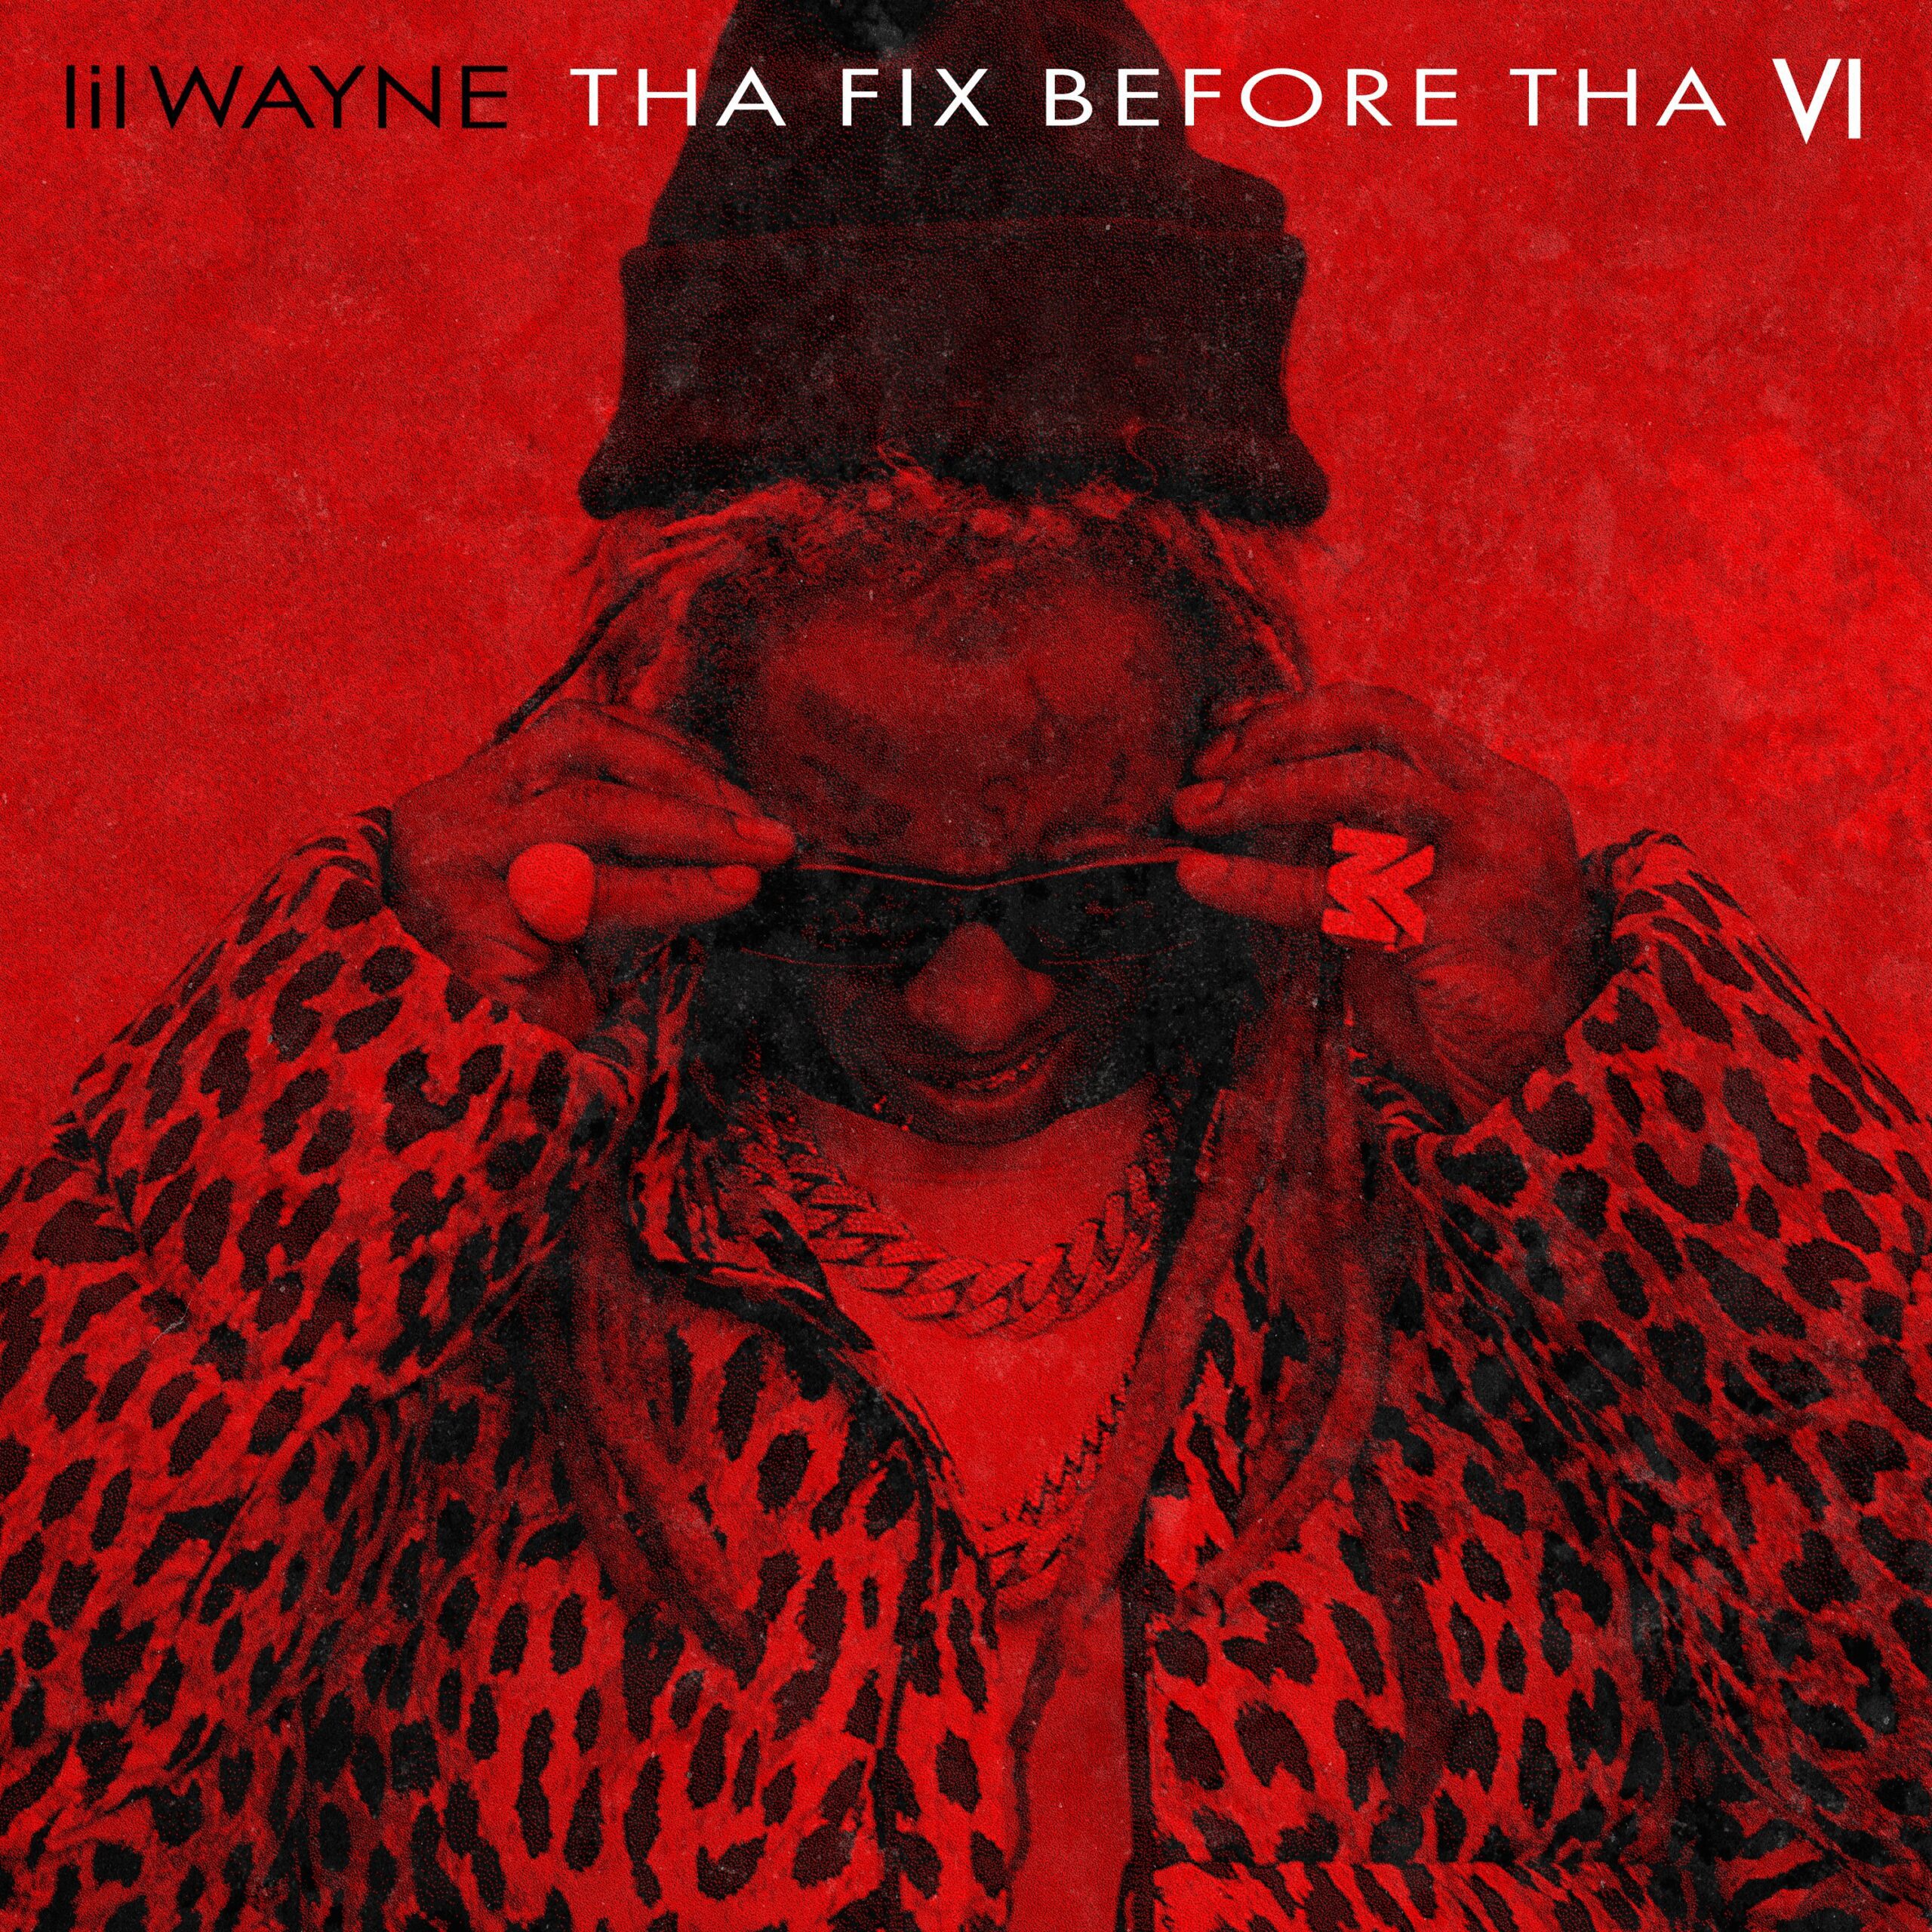 Lil Wayne releases THA FIX BEFORE THA VI via 360 MAGAZINE.